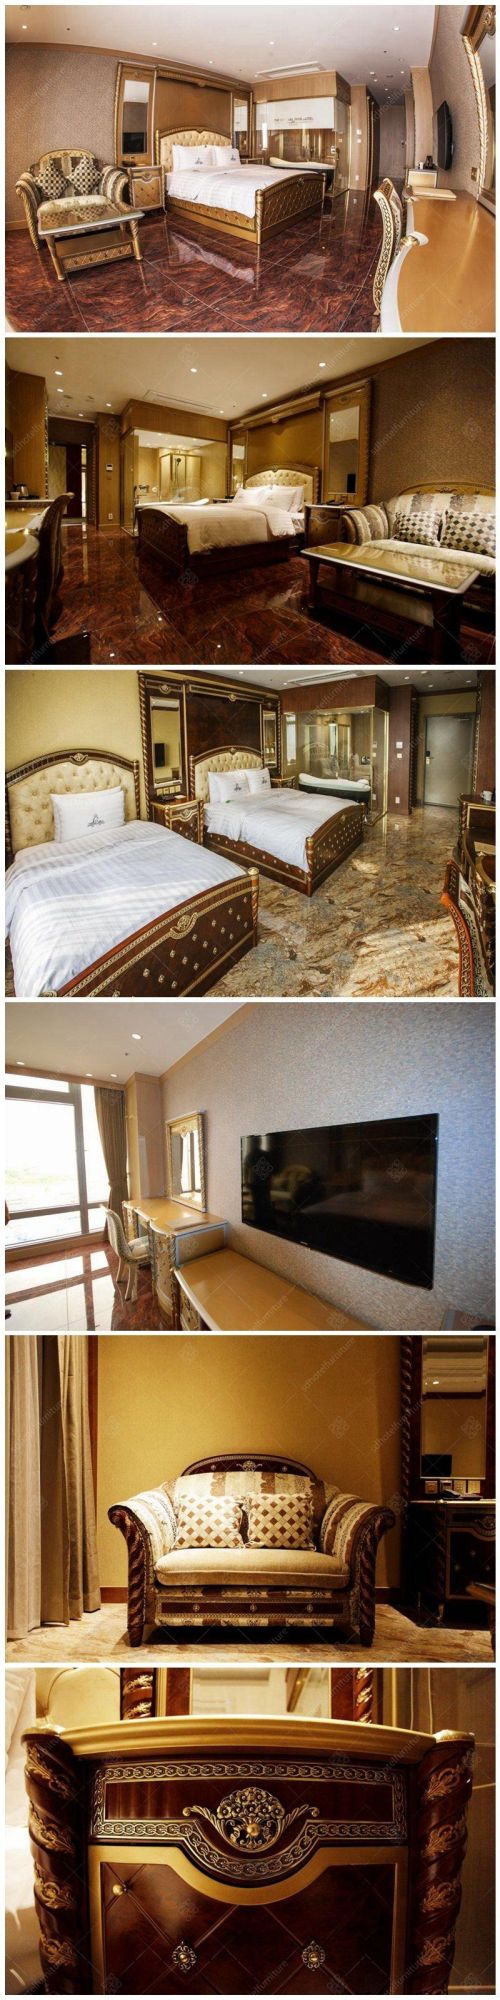 Luxury Royal Hotel Bedroom Furniture Sets Commercial Furniture Sets